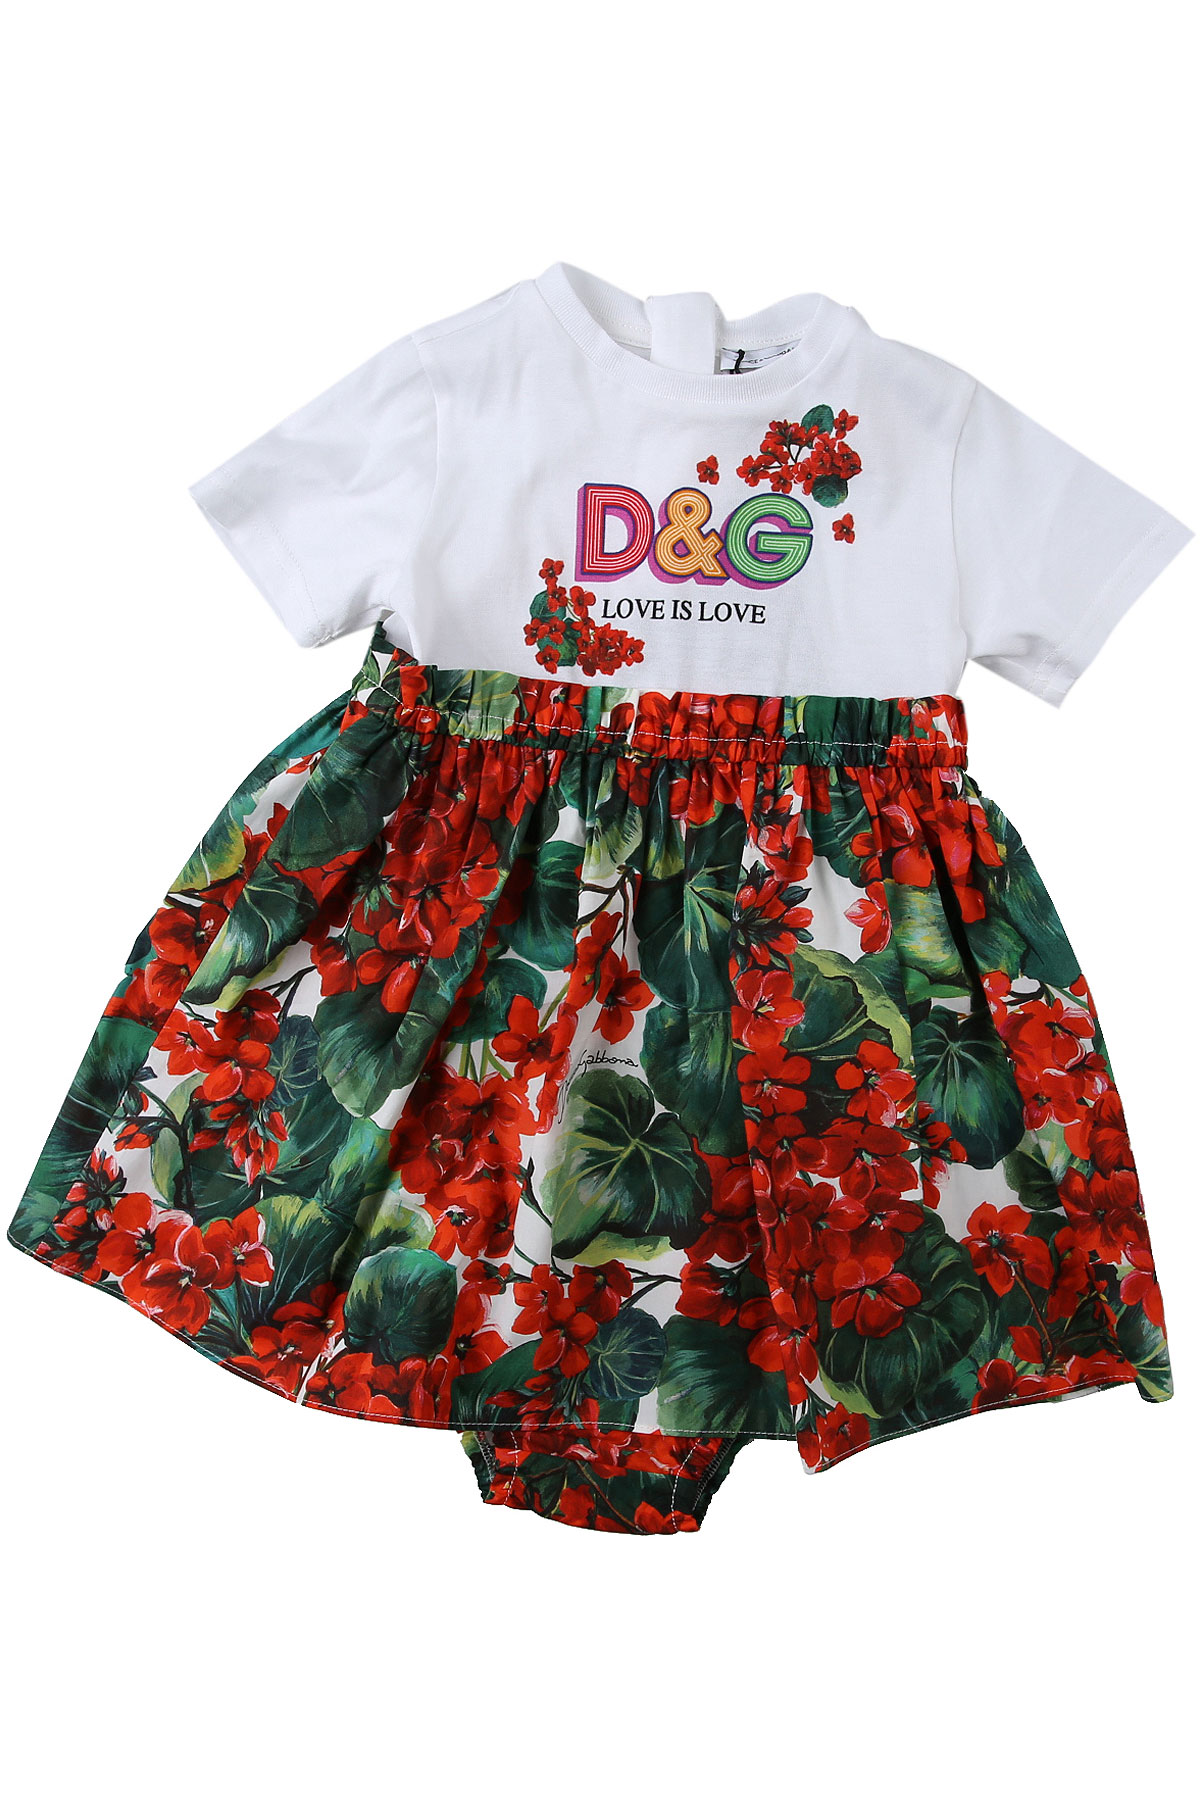 Dolce & Gabbana Baby Kleid für Mädchen Günstig im Sale, Rot, Baumwolle, 2017, 12M 18M 24M 30M 9M